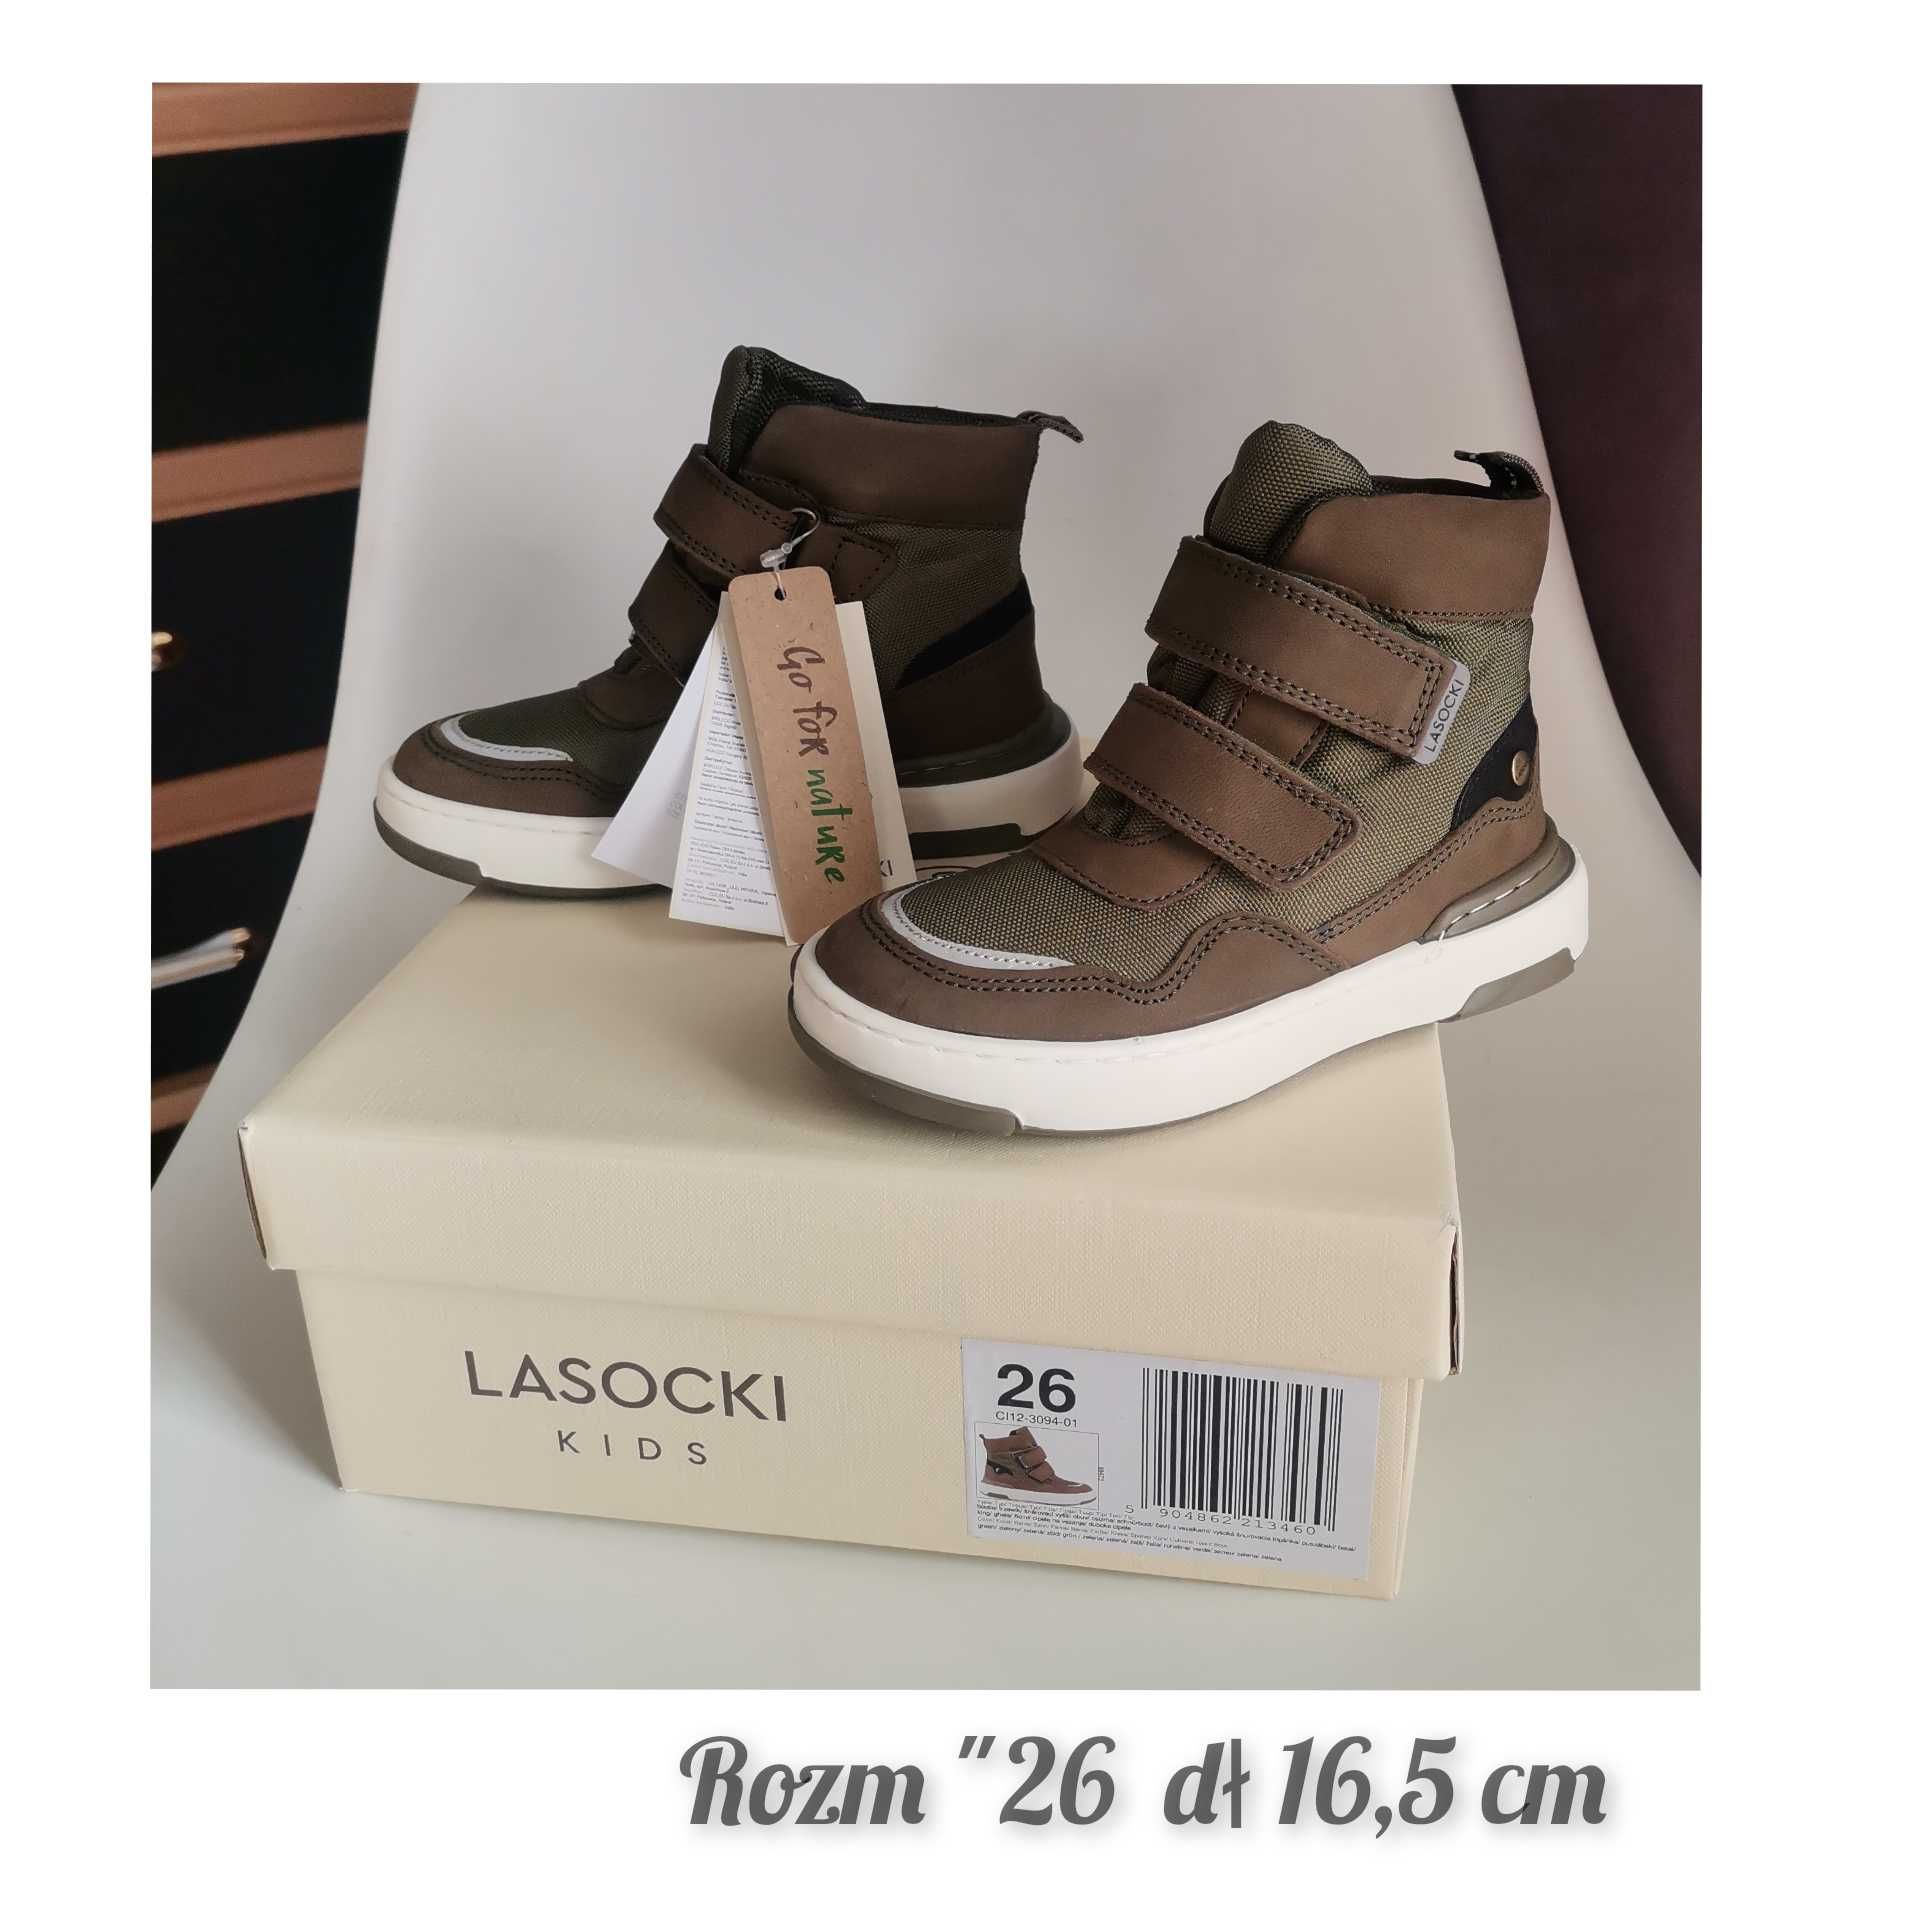 Nowe buty Lasocki 25/26 buty przejściowe dl 16,3 cm Lasocki na rzepy